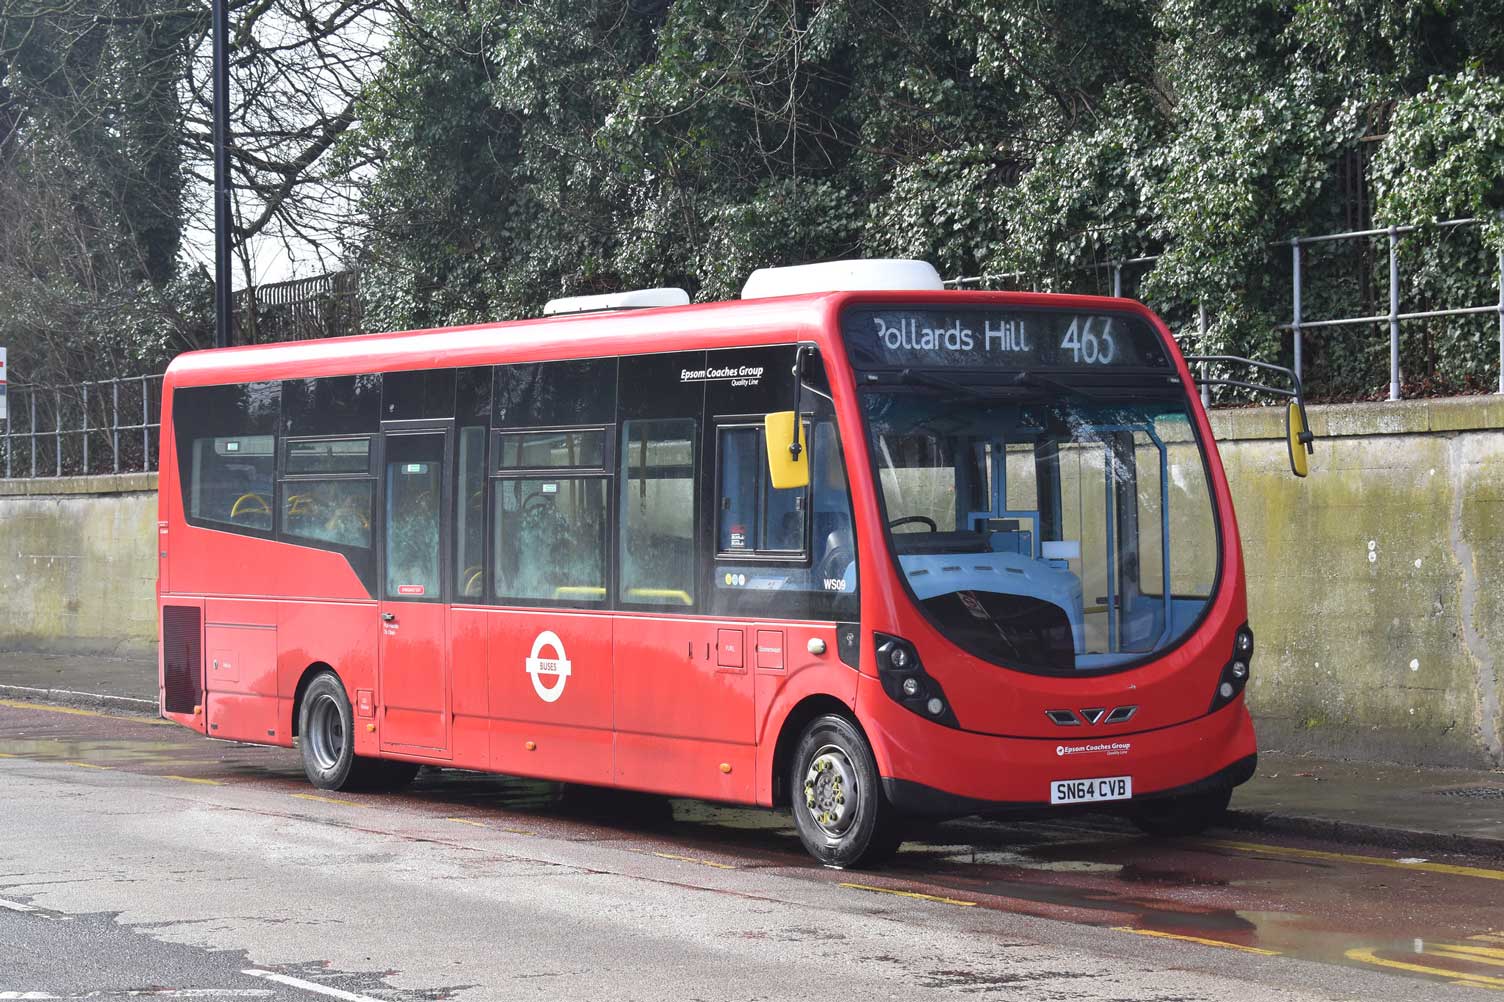 london-bus-route-463